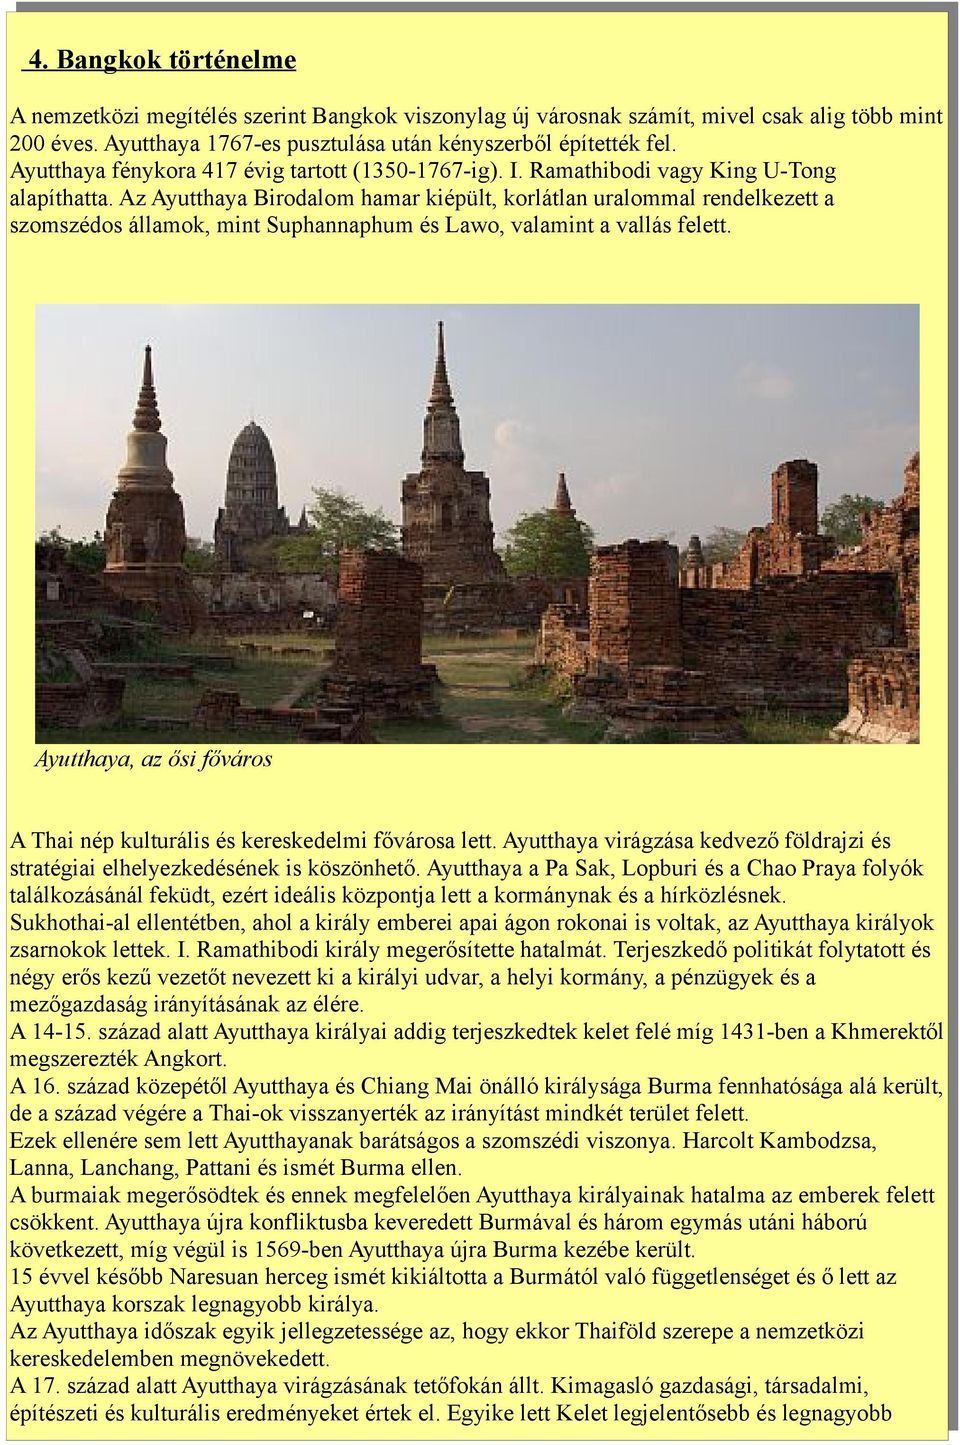 Az Ayutthaya Birodalom hamar kiépült, korlátlan uralommal rendelkezett a szomszédos államok, mint Suphannaphum és Lawo, valamint a vallás felett.